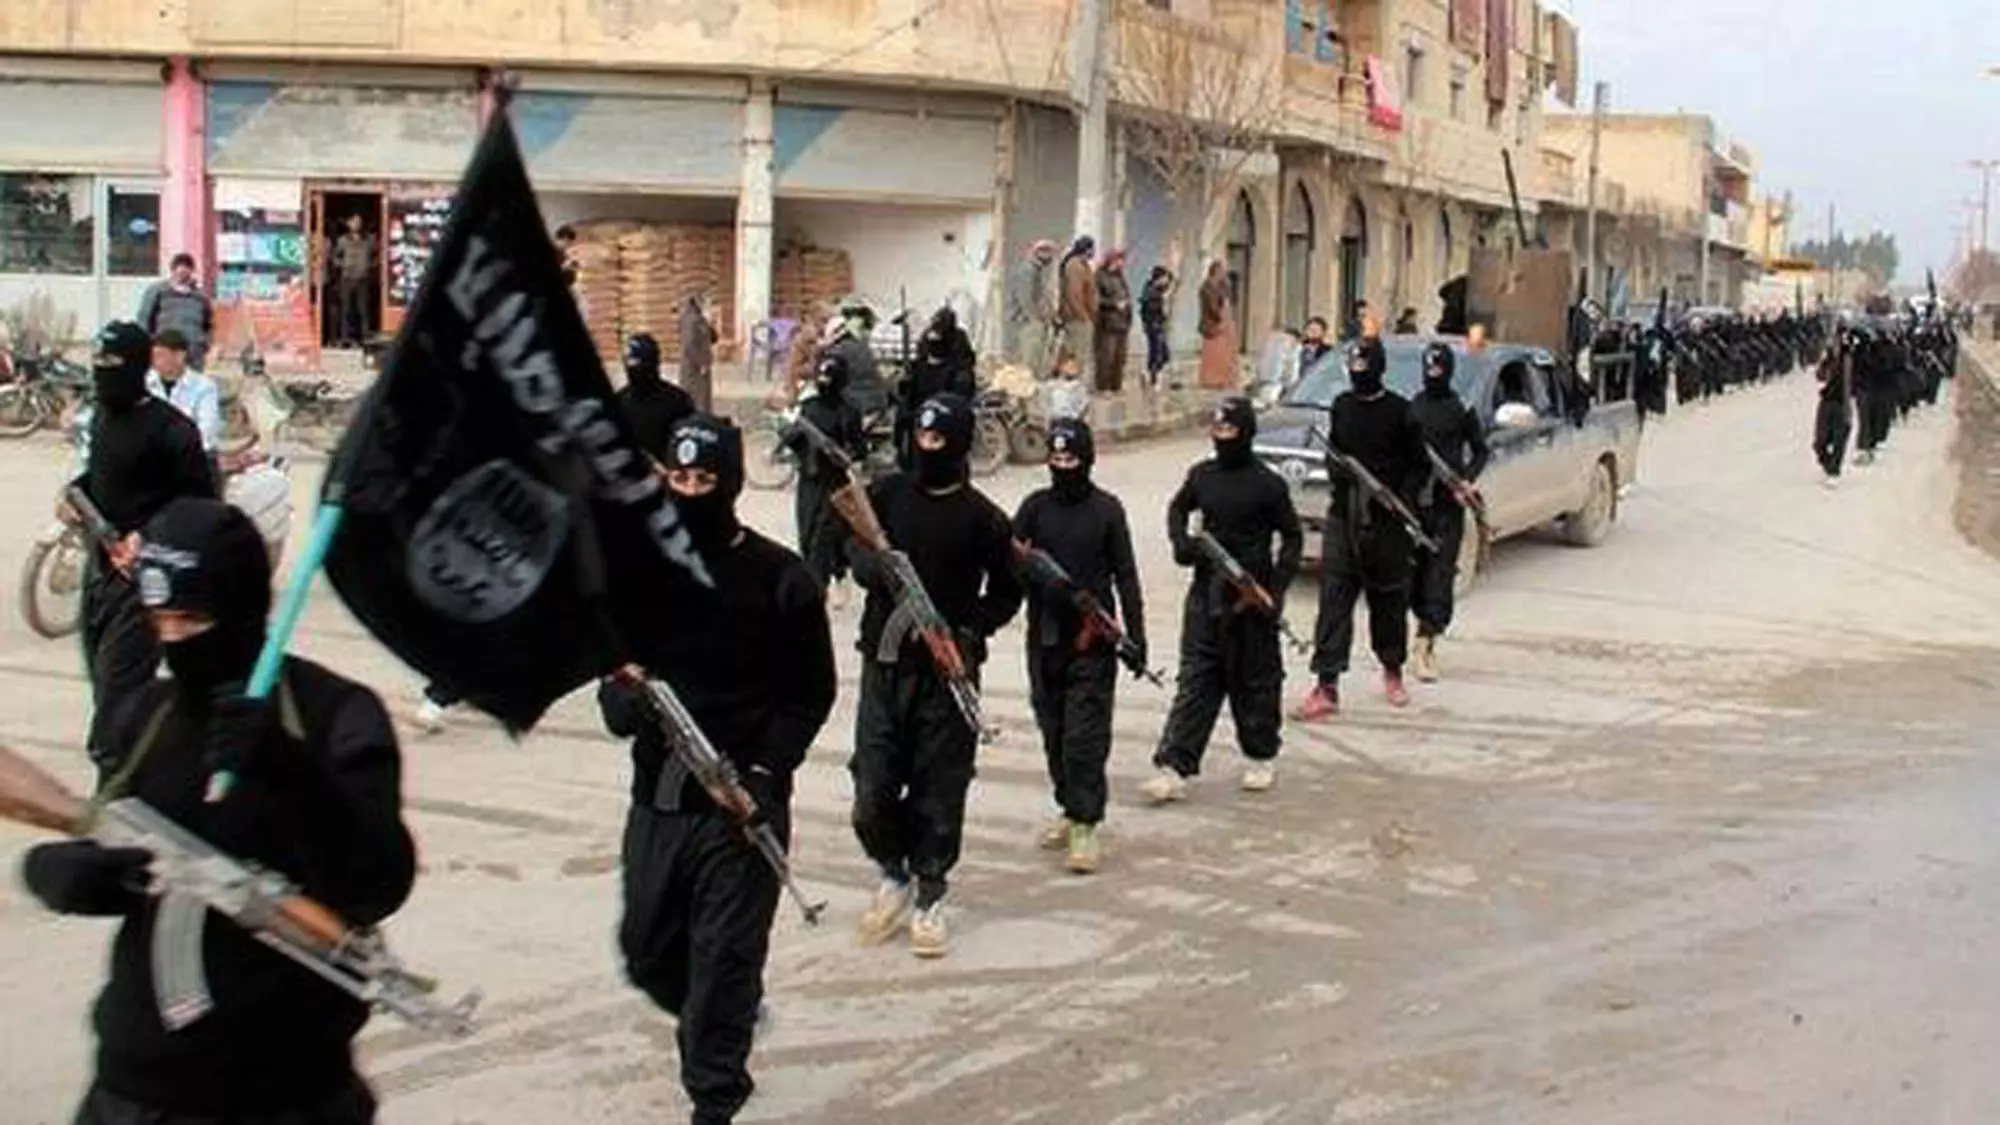 לוחמי הארגון האיסלאמי הקיצוני ISIS, או "המדינה האיסלאמית בעיראק וא-שאם"